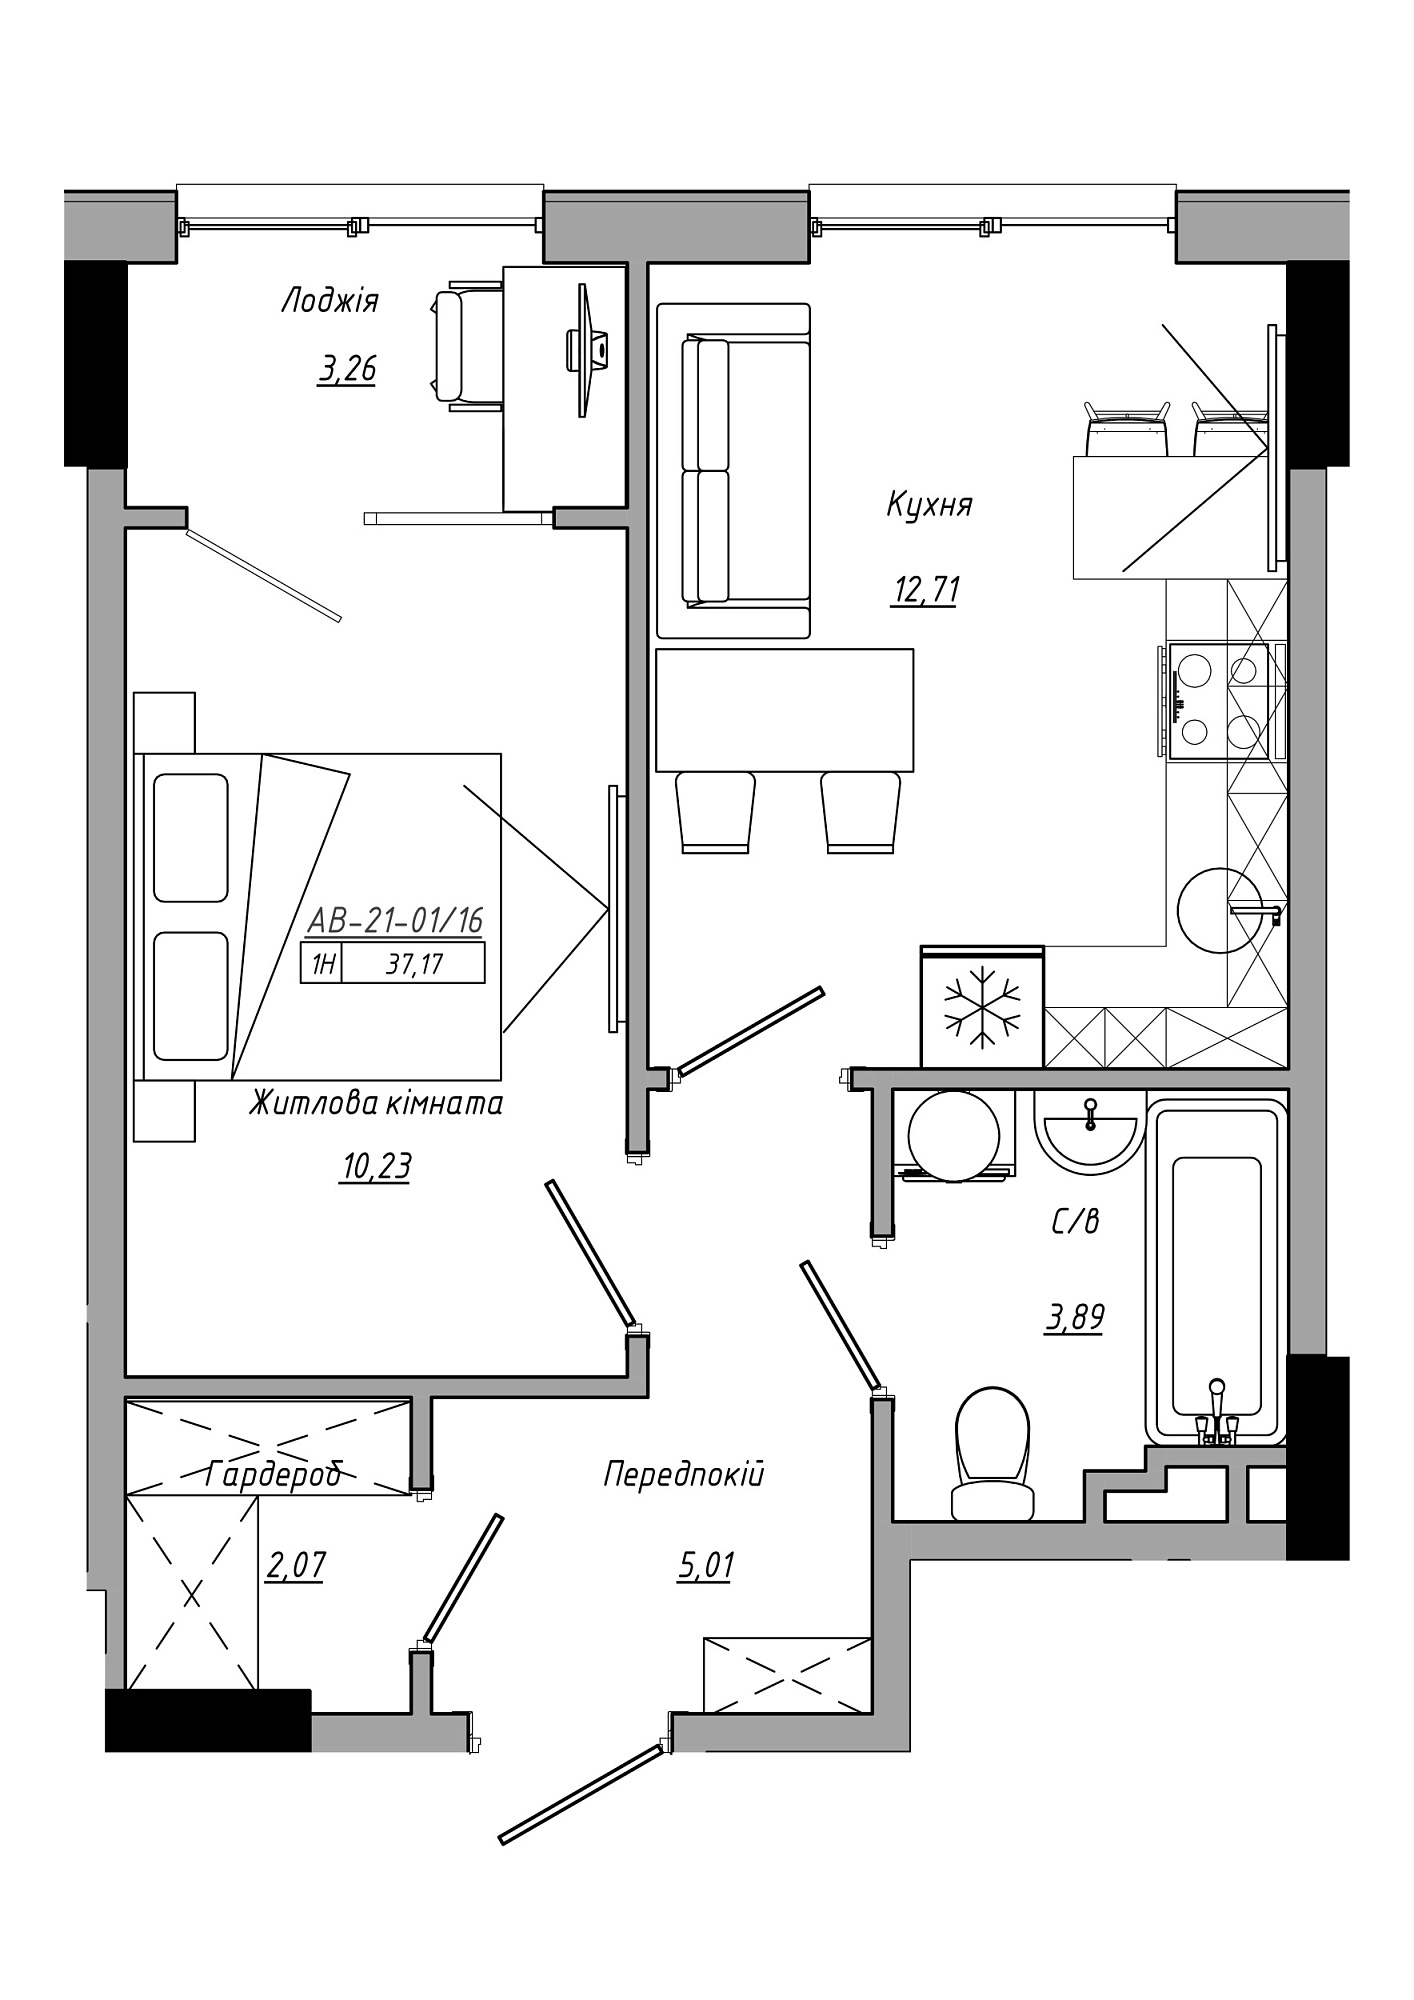 Планировка 1-к квартира площей 37.17м2, AB-21-01/00016.